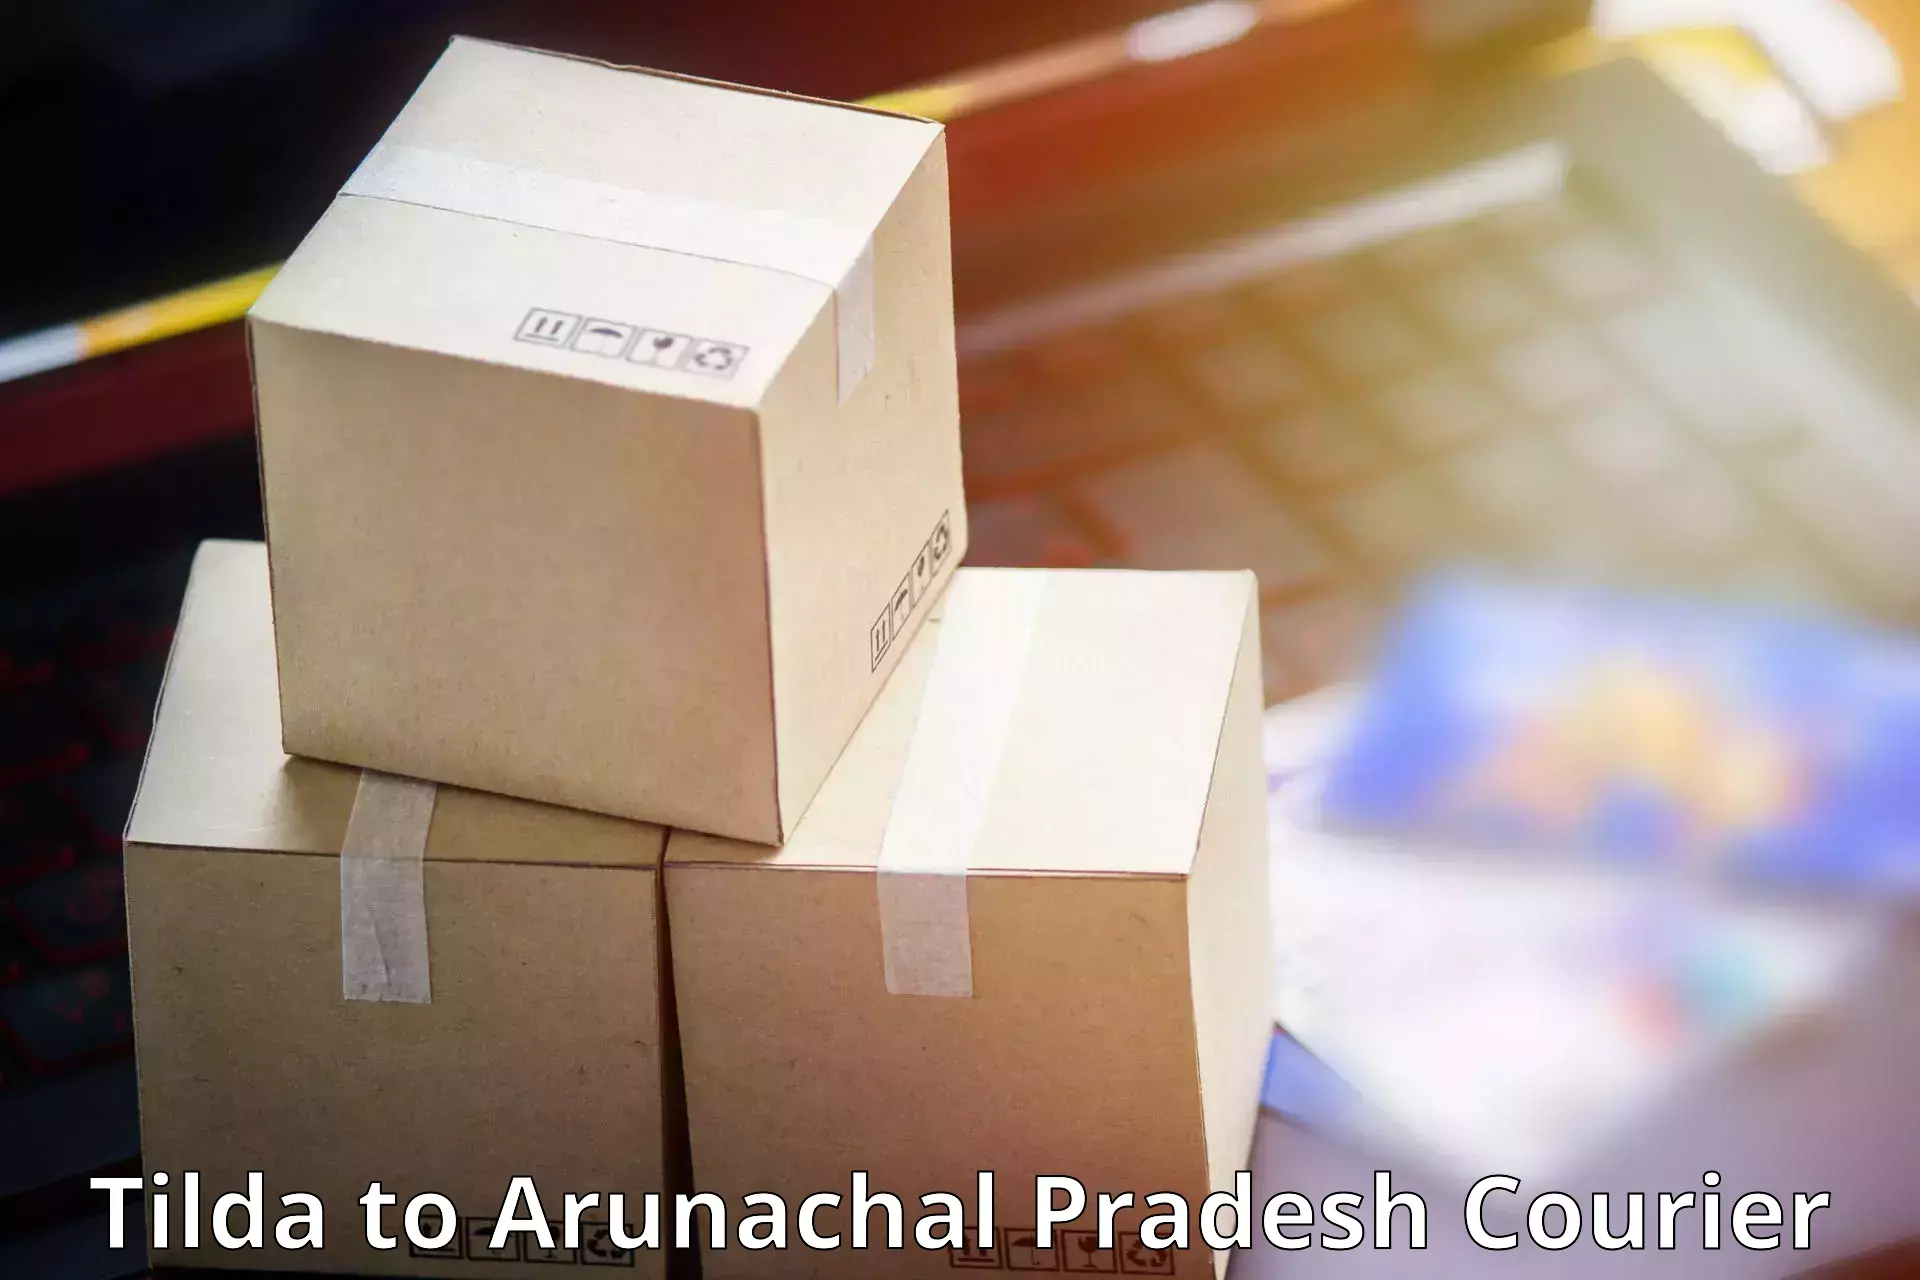 Special handling courier Tilda to Arunachal Pradesh